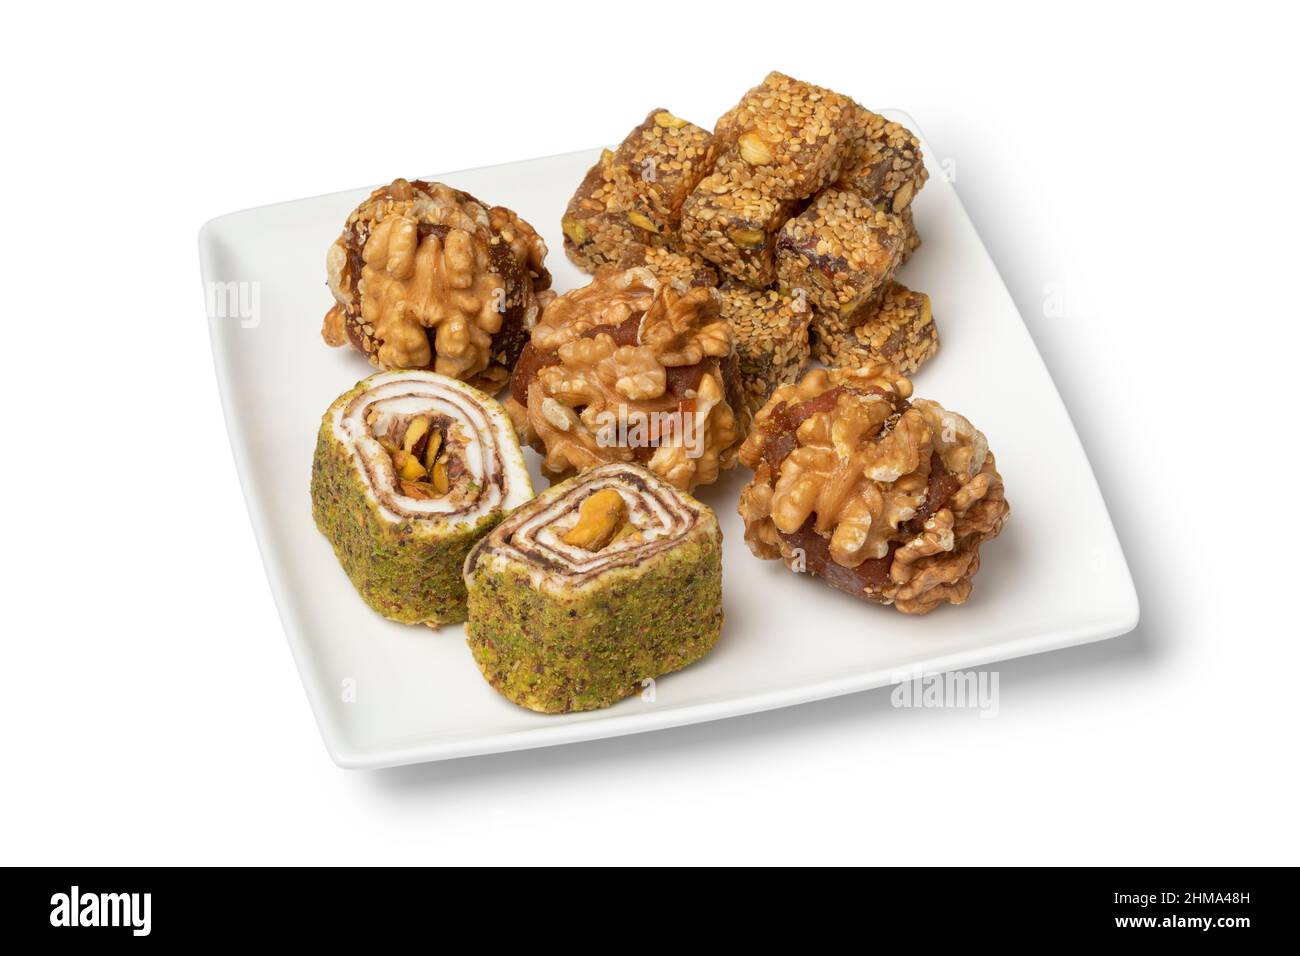 Piatto con variazione di dolce delizia turca con noci in primo piano isolato su sfondo bianco Foto Stock